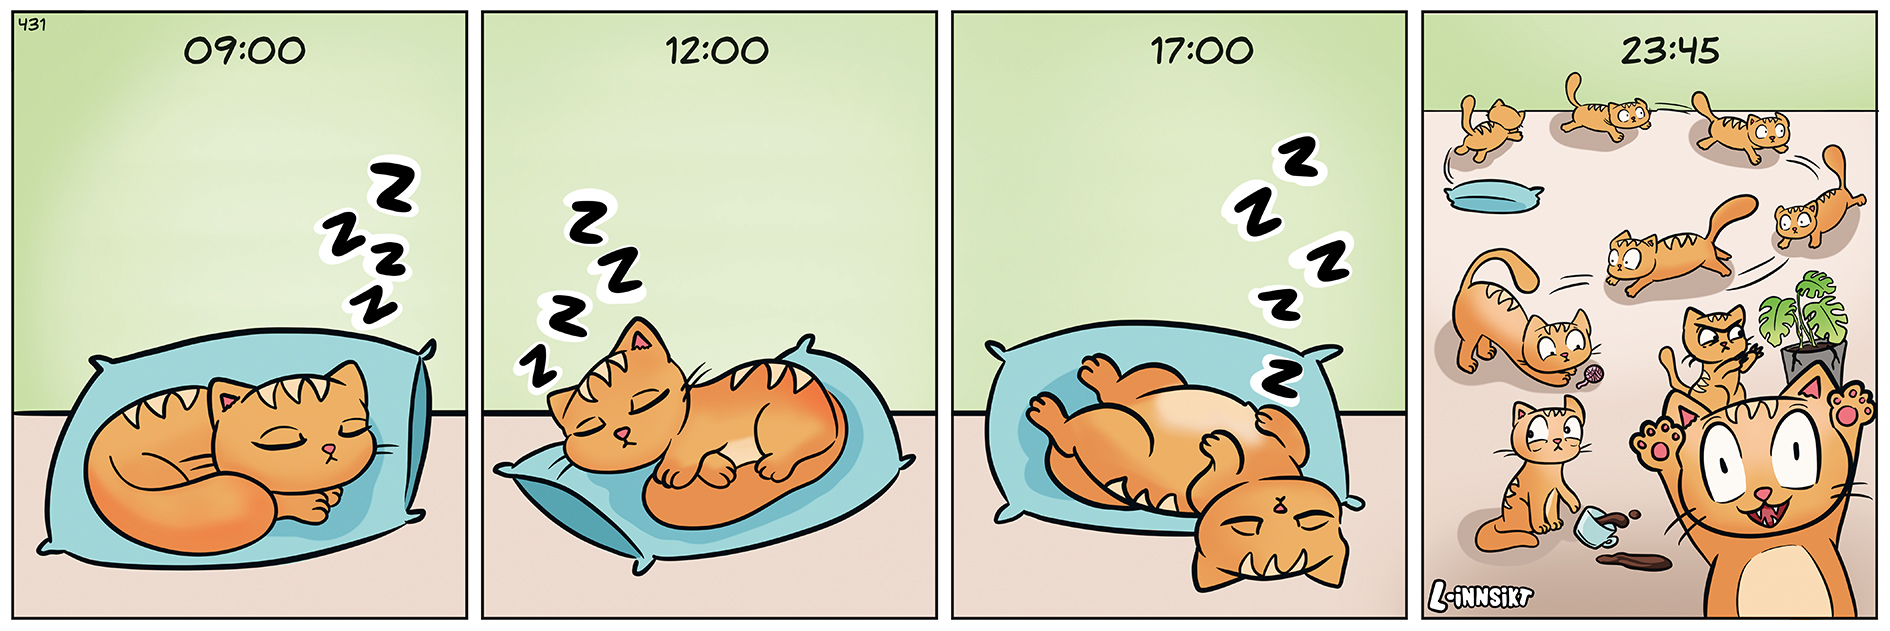 Teikneseriestripe som syner ein katt som sover heile dagen, men vaknar til liv kl. 23.45.